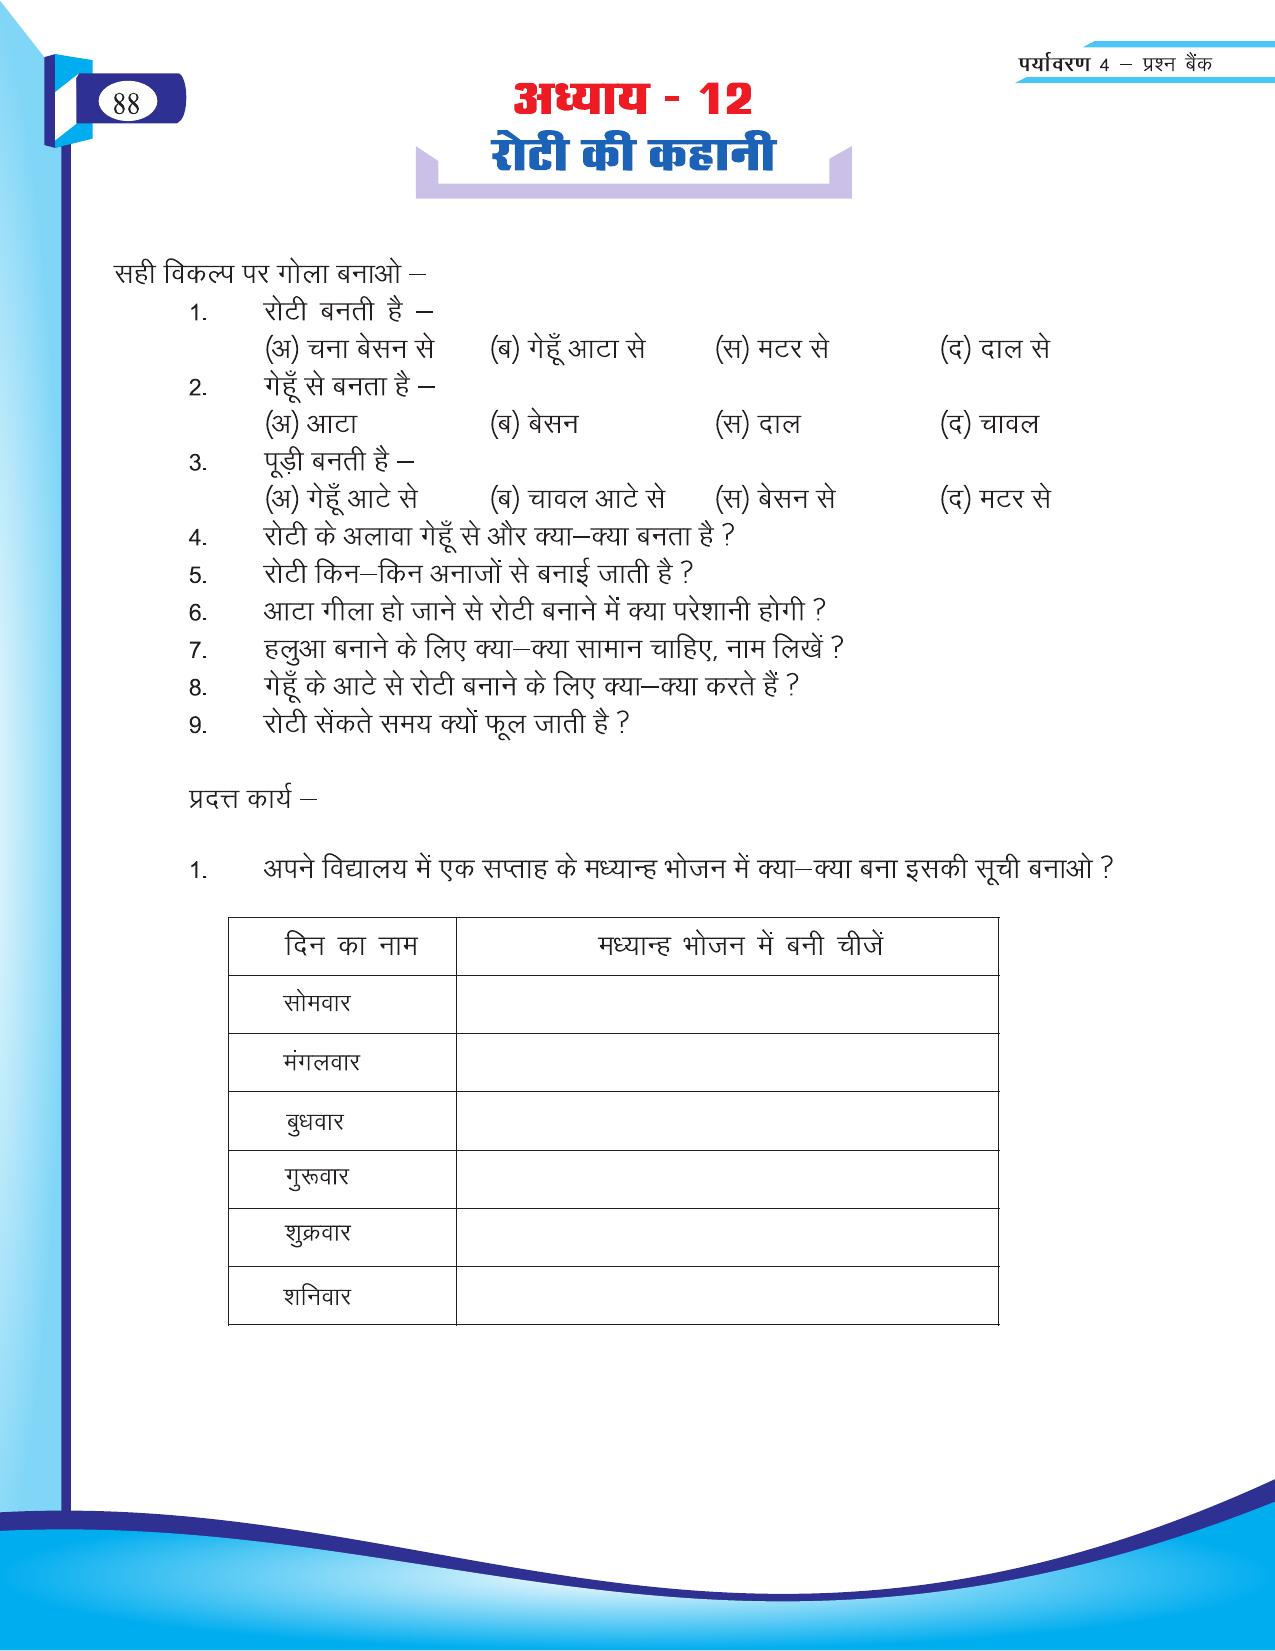 Chhattisgarh Board Class 4 EVS Question Bank 2015-16 - Page 17